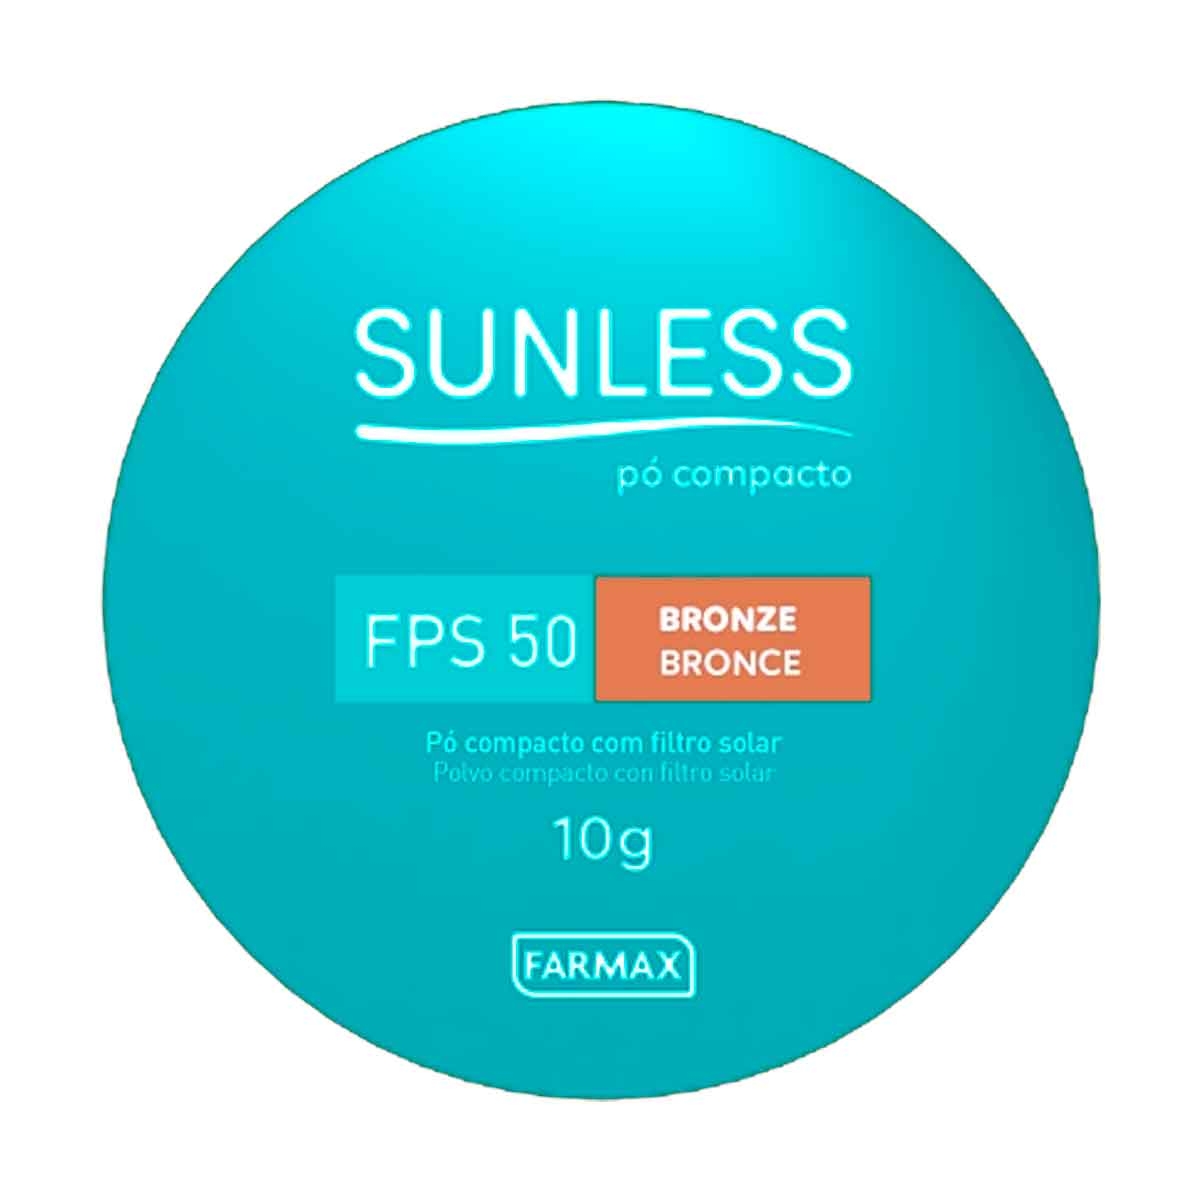 Pó Compacto Sunless Bronze FPS50 com 10g 10g